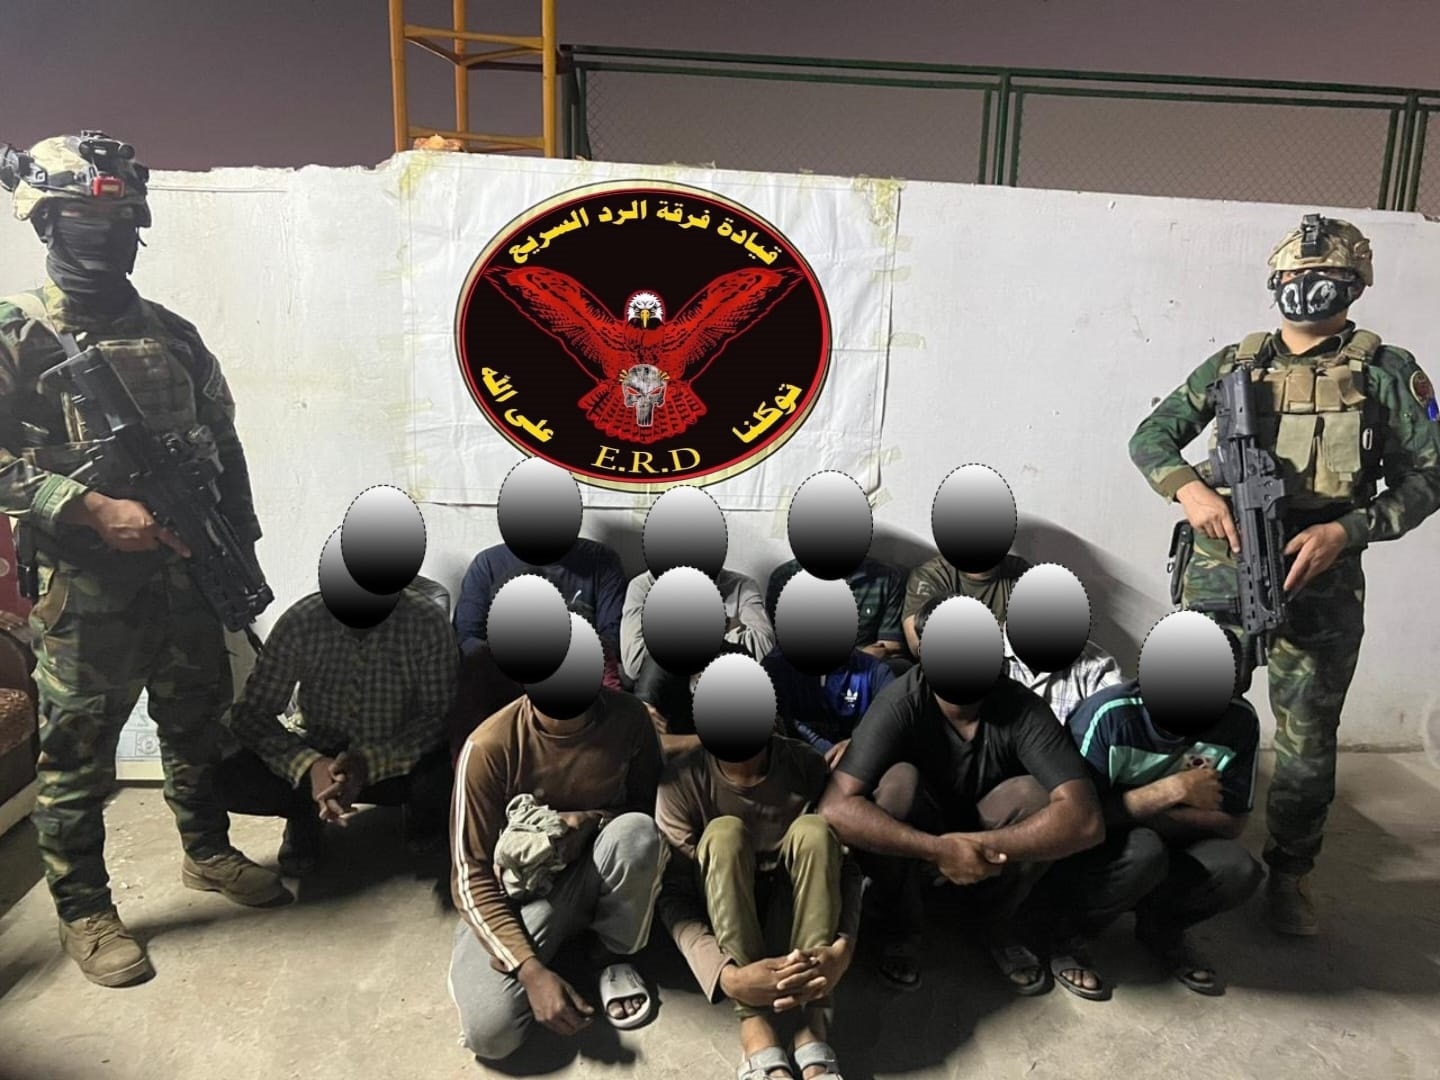 القبض على 16 متهمًا غالبيتهم أجانب في رصافة بغداد